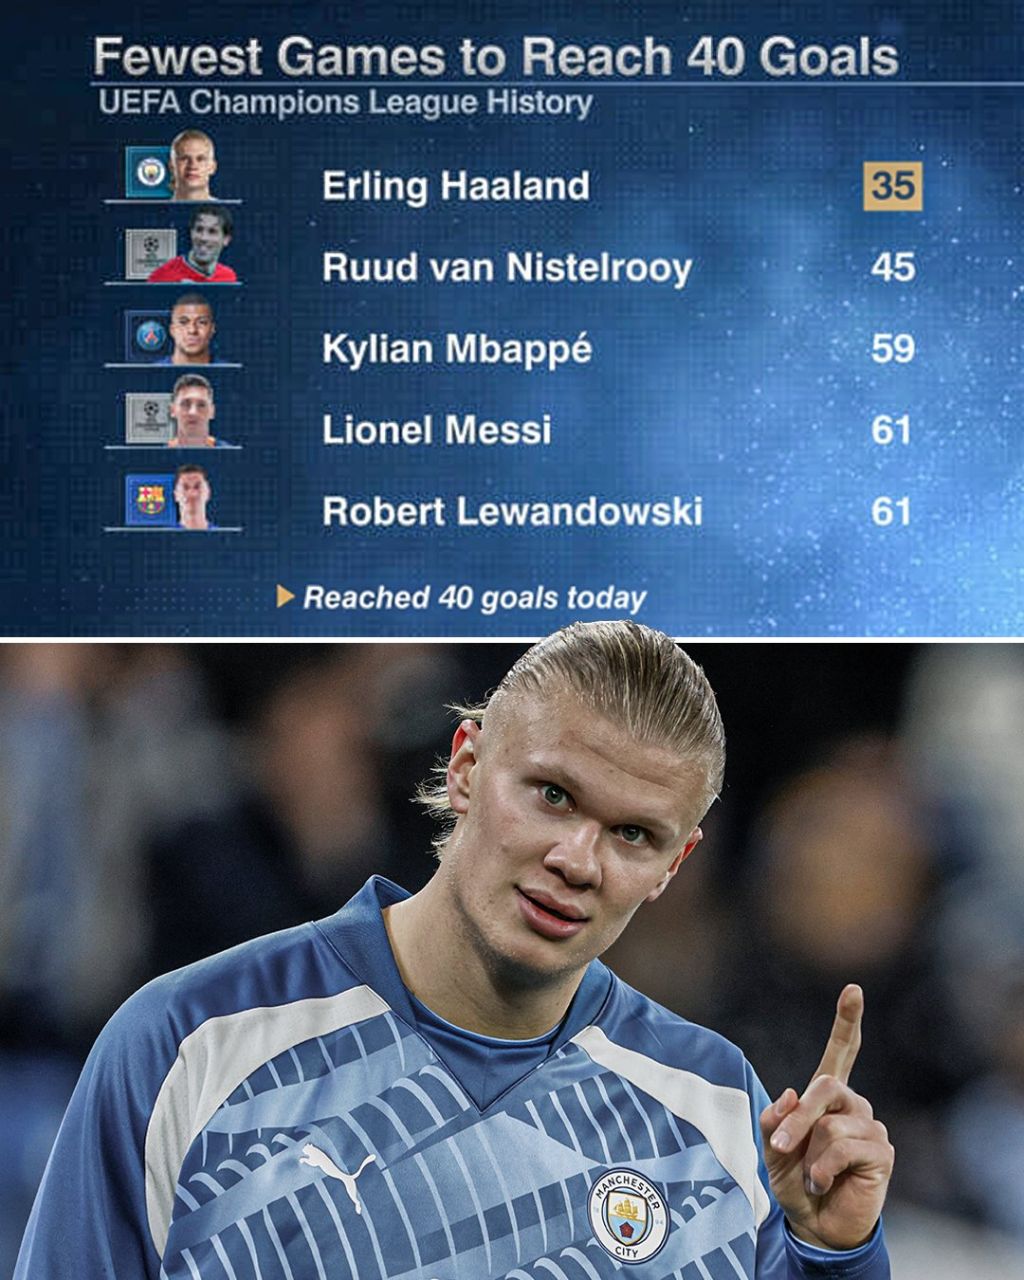 بازیکنانی که با کمترین تعداد بازی به ۴۰ گل زده در لیگ قهرمانان اروپا رسیدند؛ هالند بالاتر از مسی و ام باپه